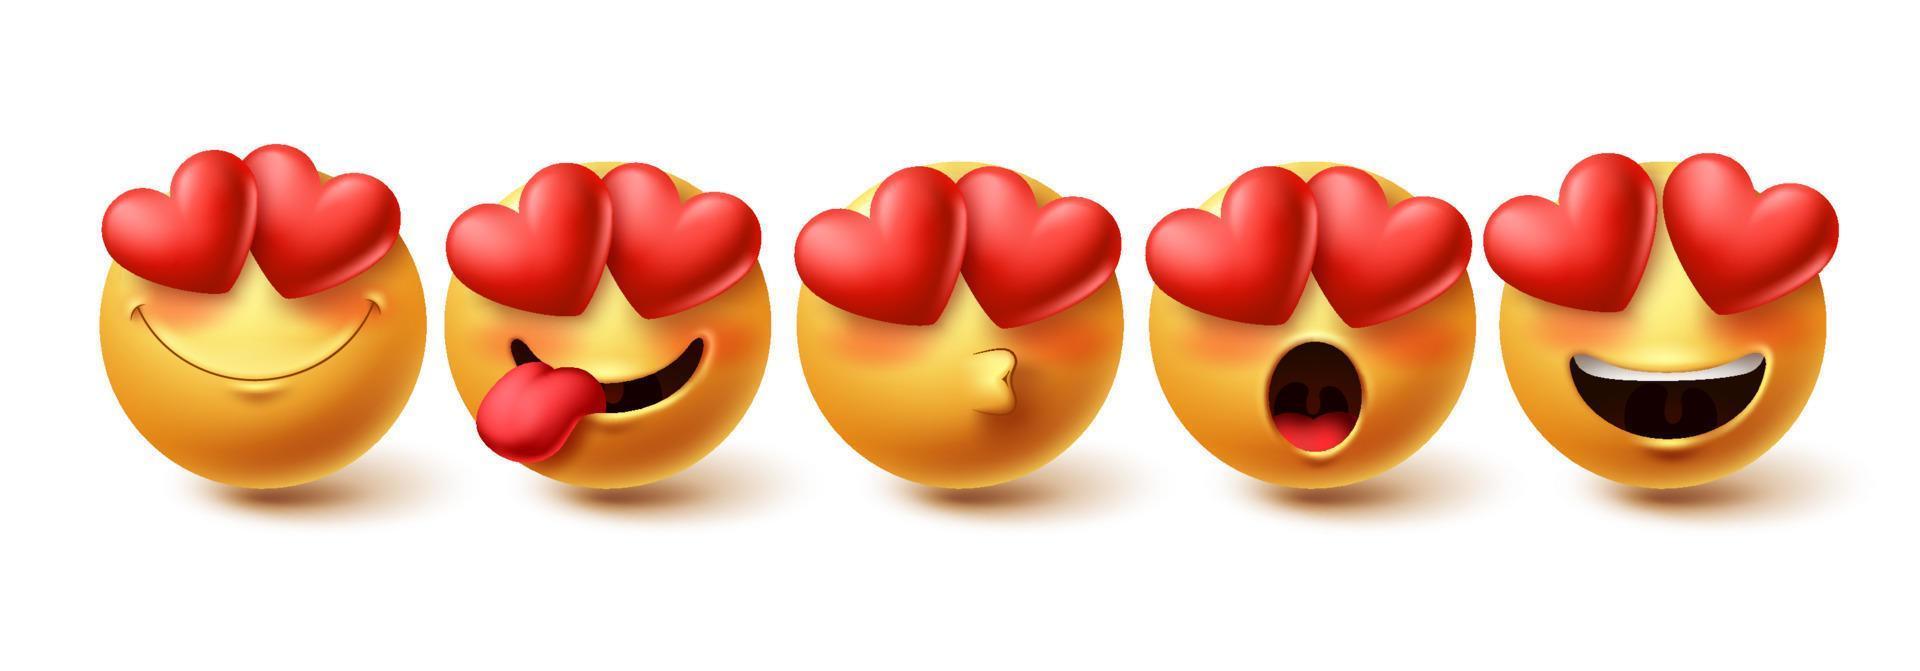 emoji i kärlek ansikte vektor set. gula emojis i glada, rodnande, kyssande och förälskade ansiktsuttryck isolerade i vit bakgrund för designelement. vektor illustration